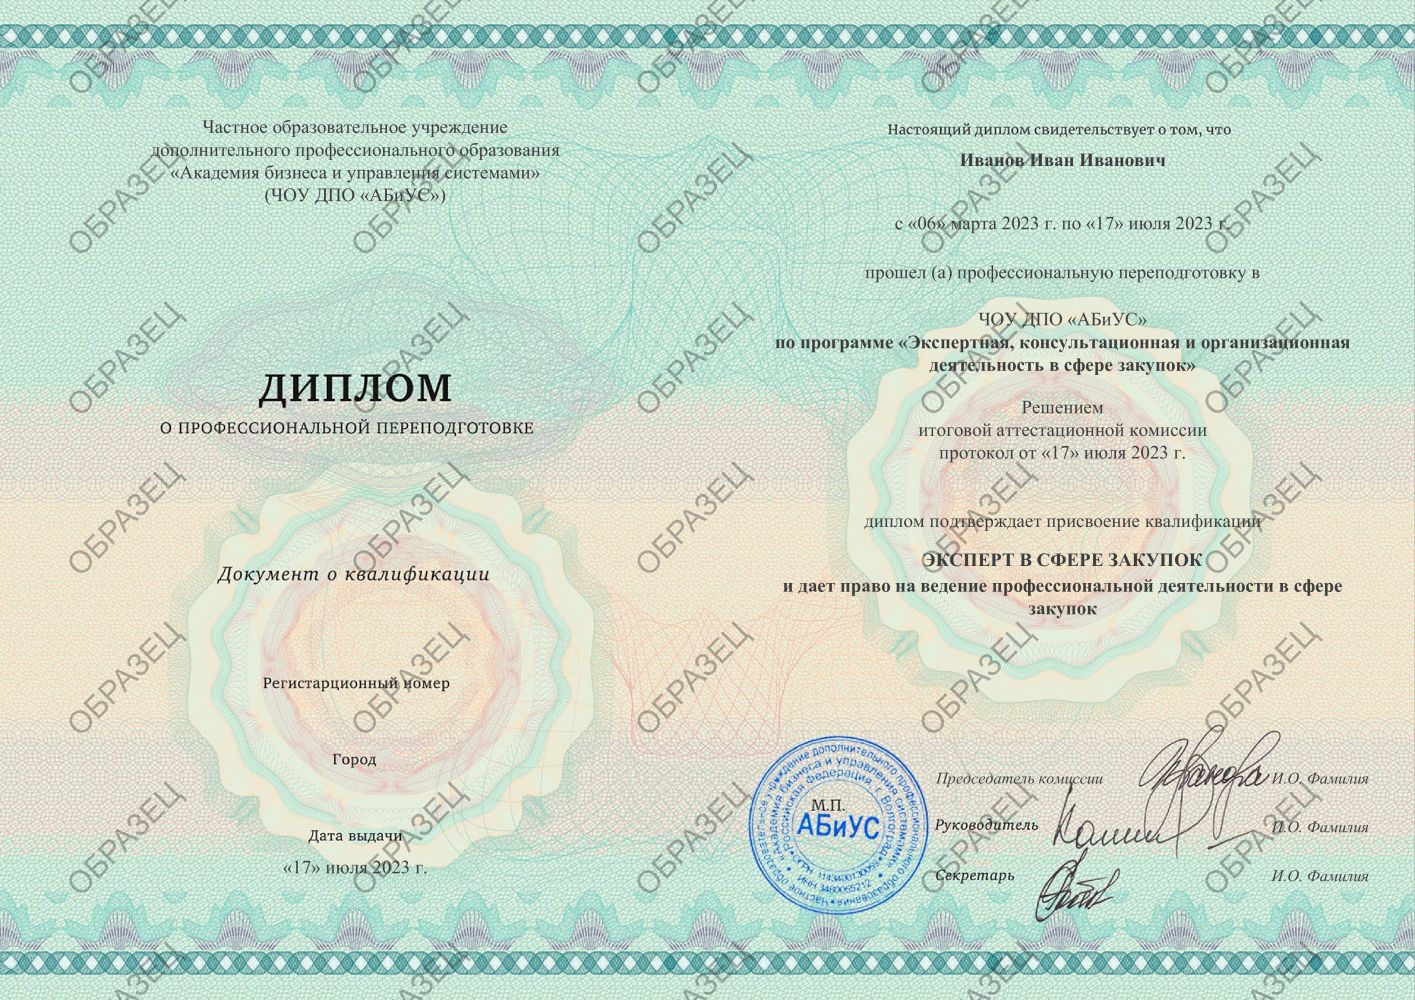 Диплом Экспертная, консультационная и организационная деятельность в сфере закупок 500 часов 14563 руб.